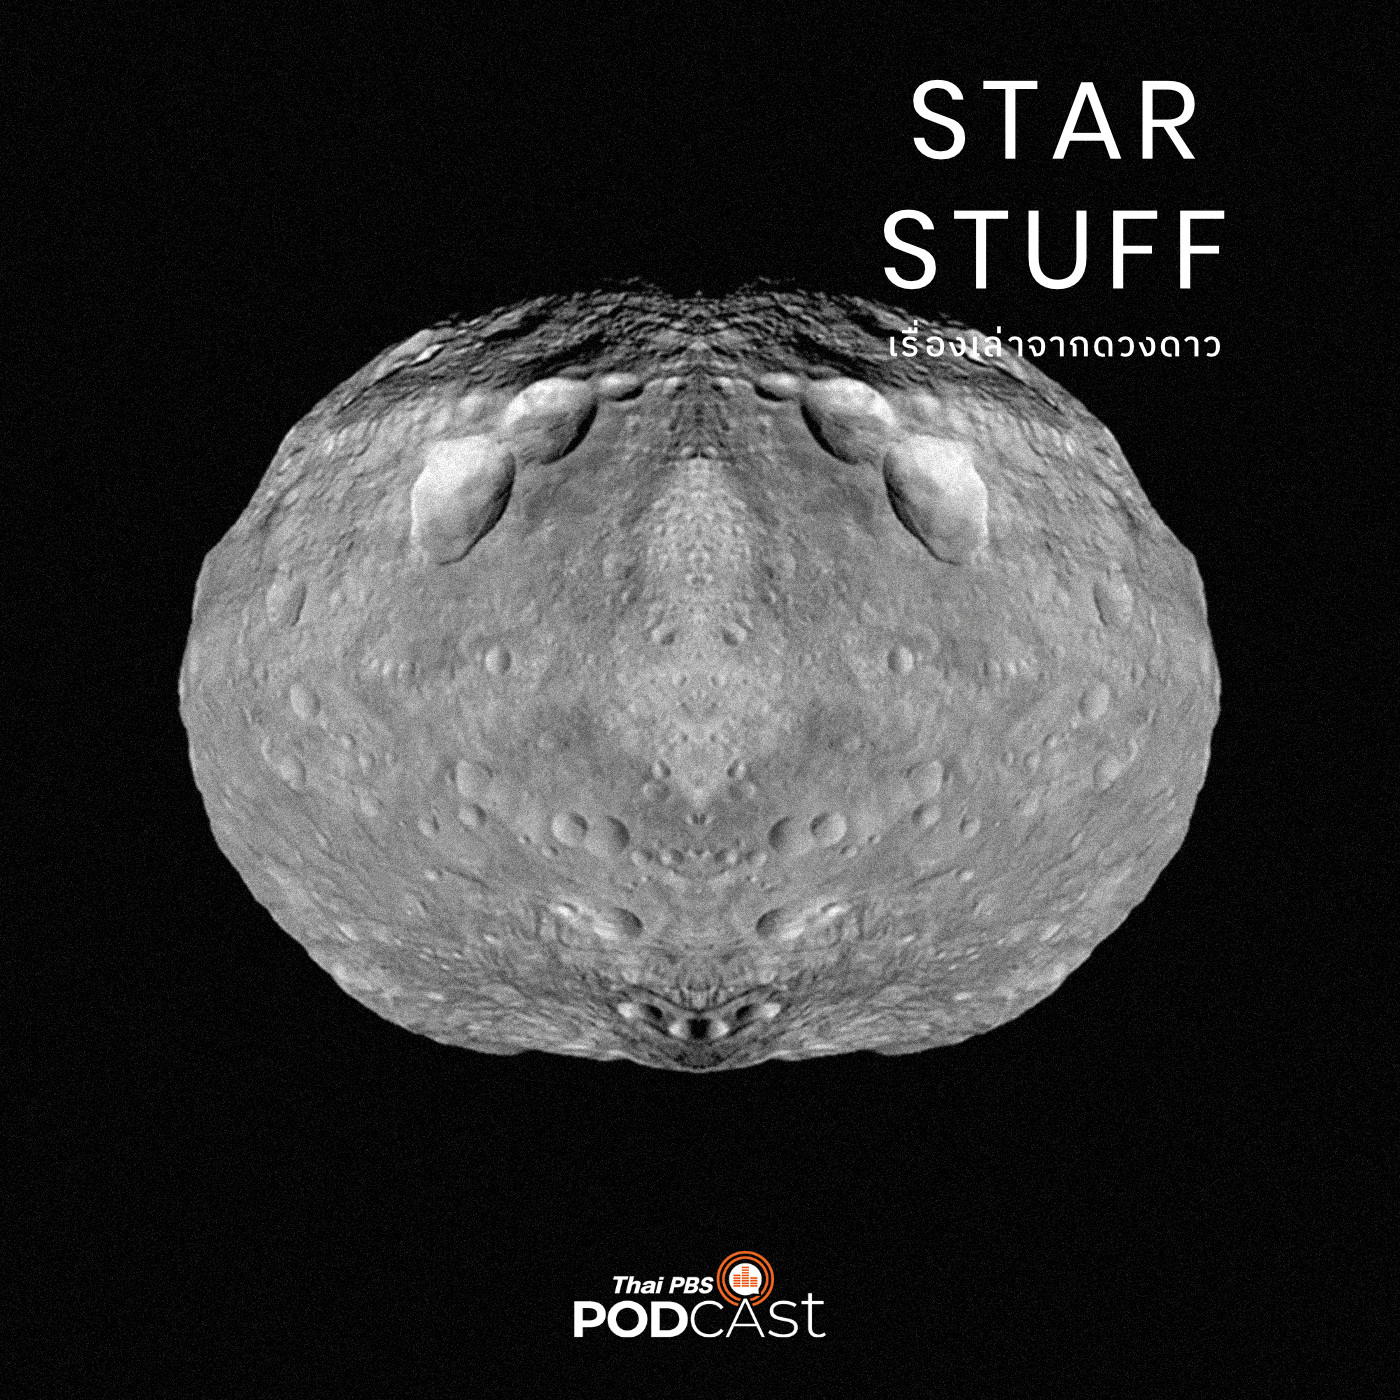 Starstuff เรื่องเล่าจากดวงดาว EP. 29: การไล่ล่าหินจากอวกาศ